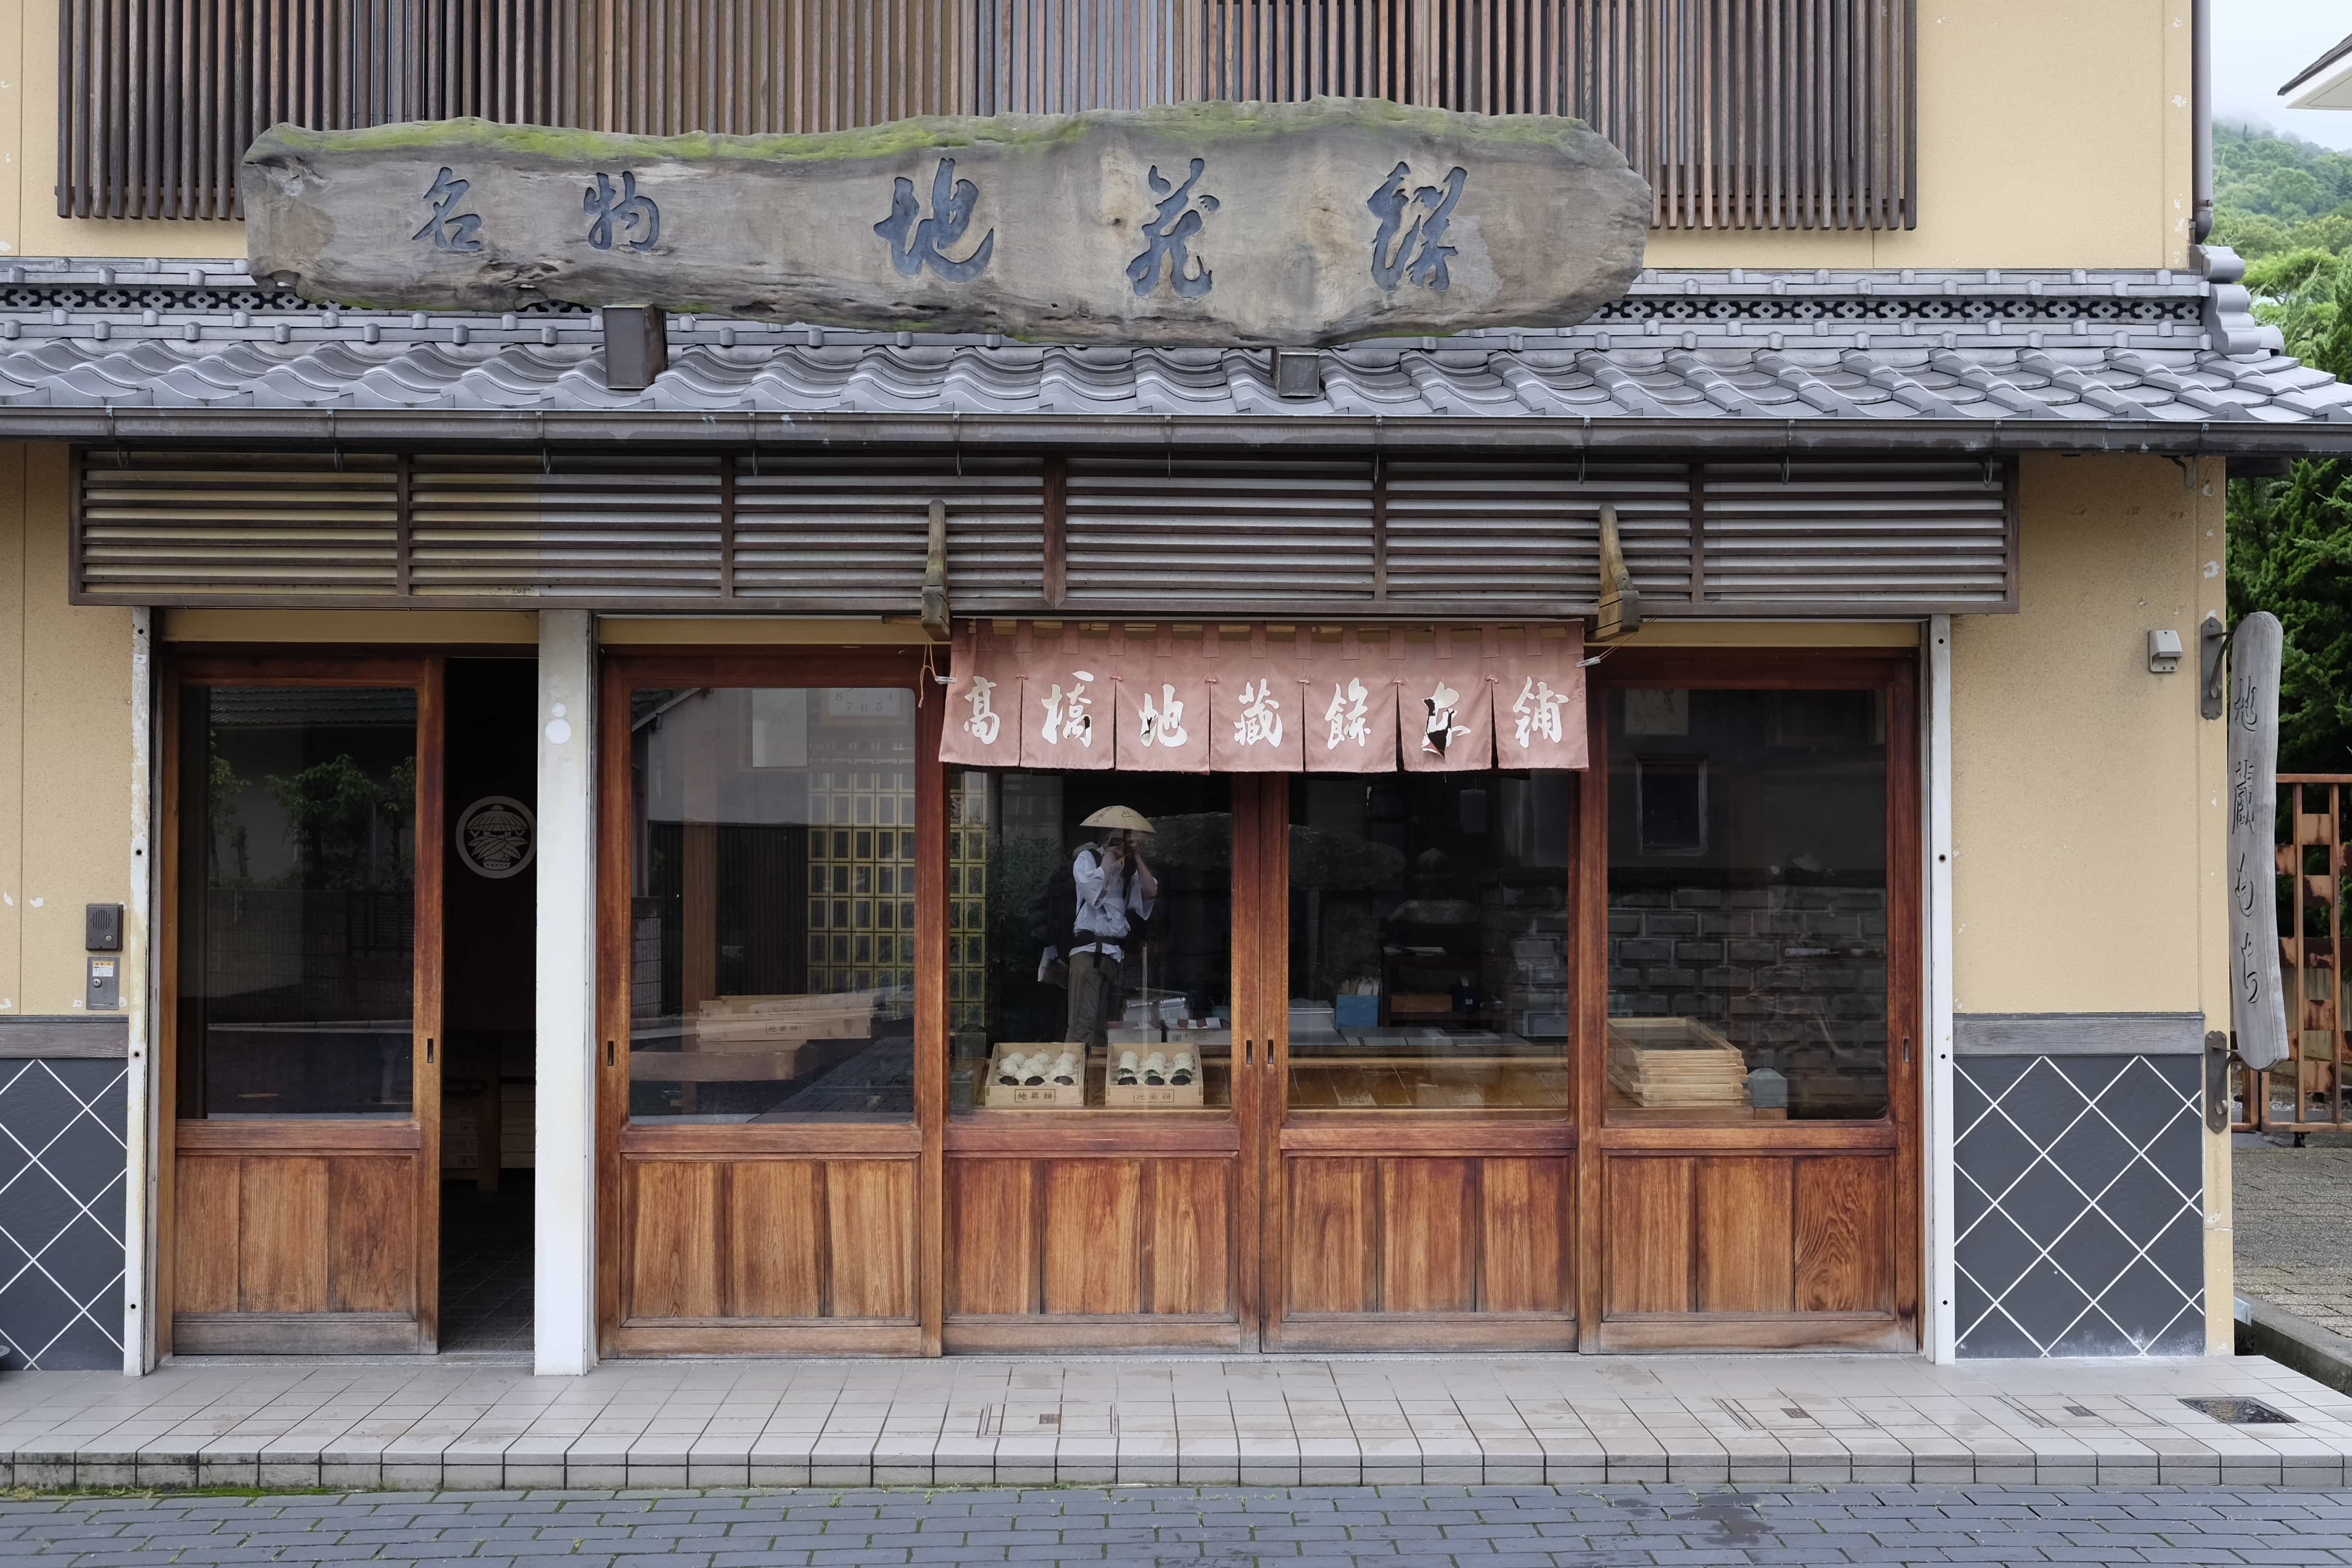 Old shop near Gōshō-ji